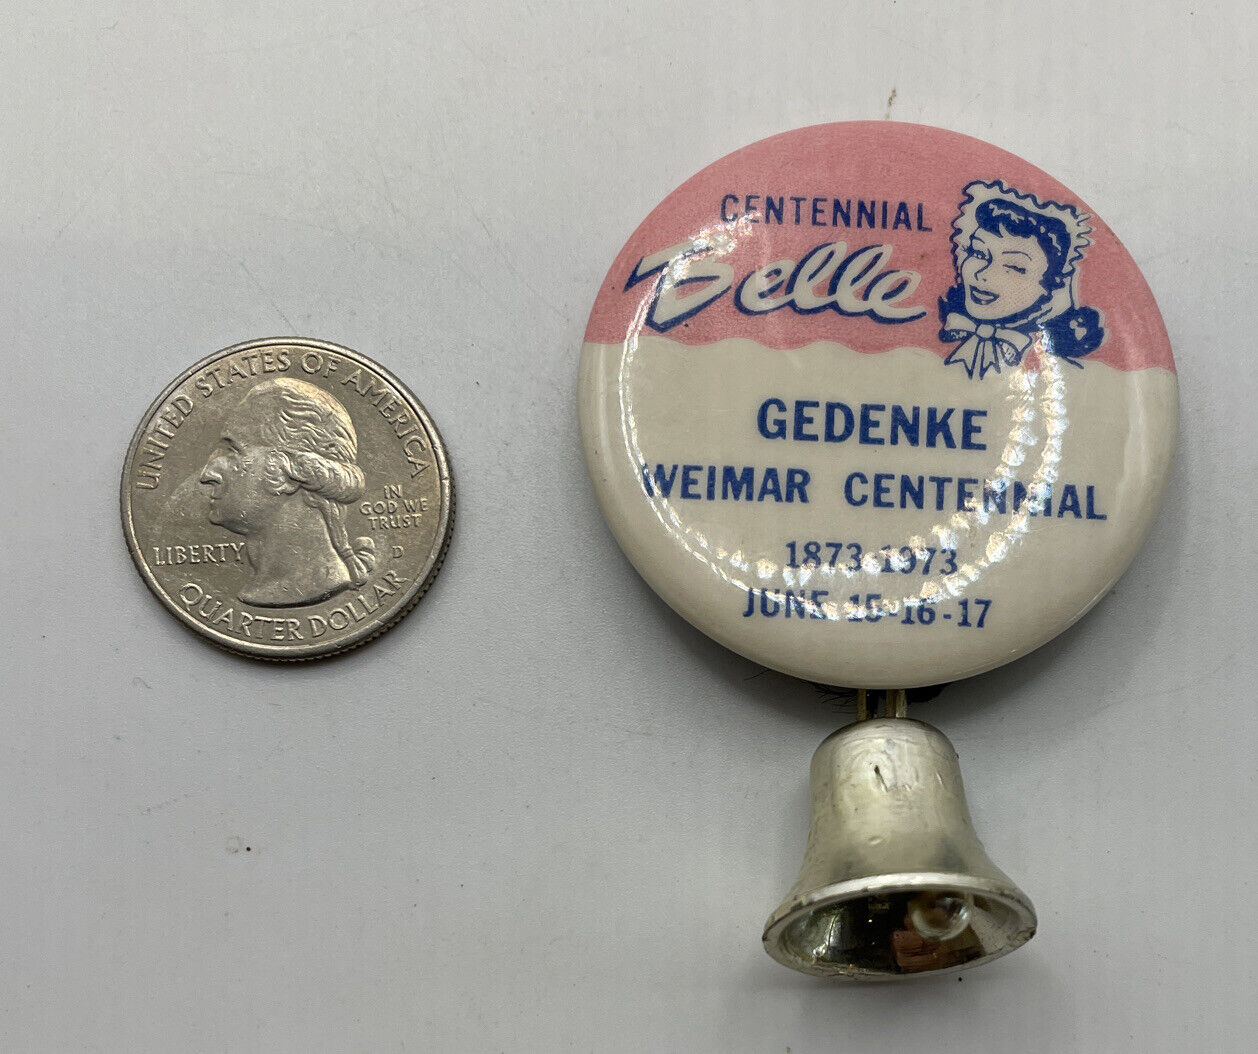 Centennial Belle Gedenke Weimar Centennial 1873-1973 June 15-16-17 Button